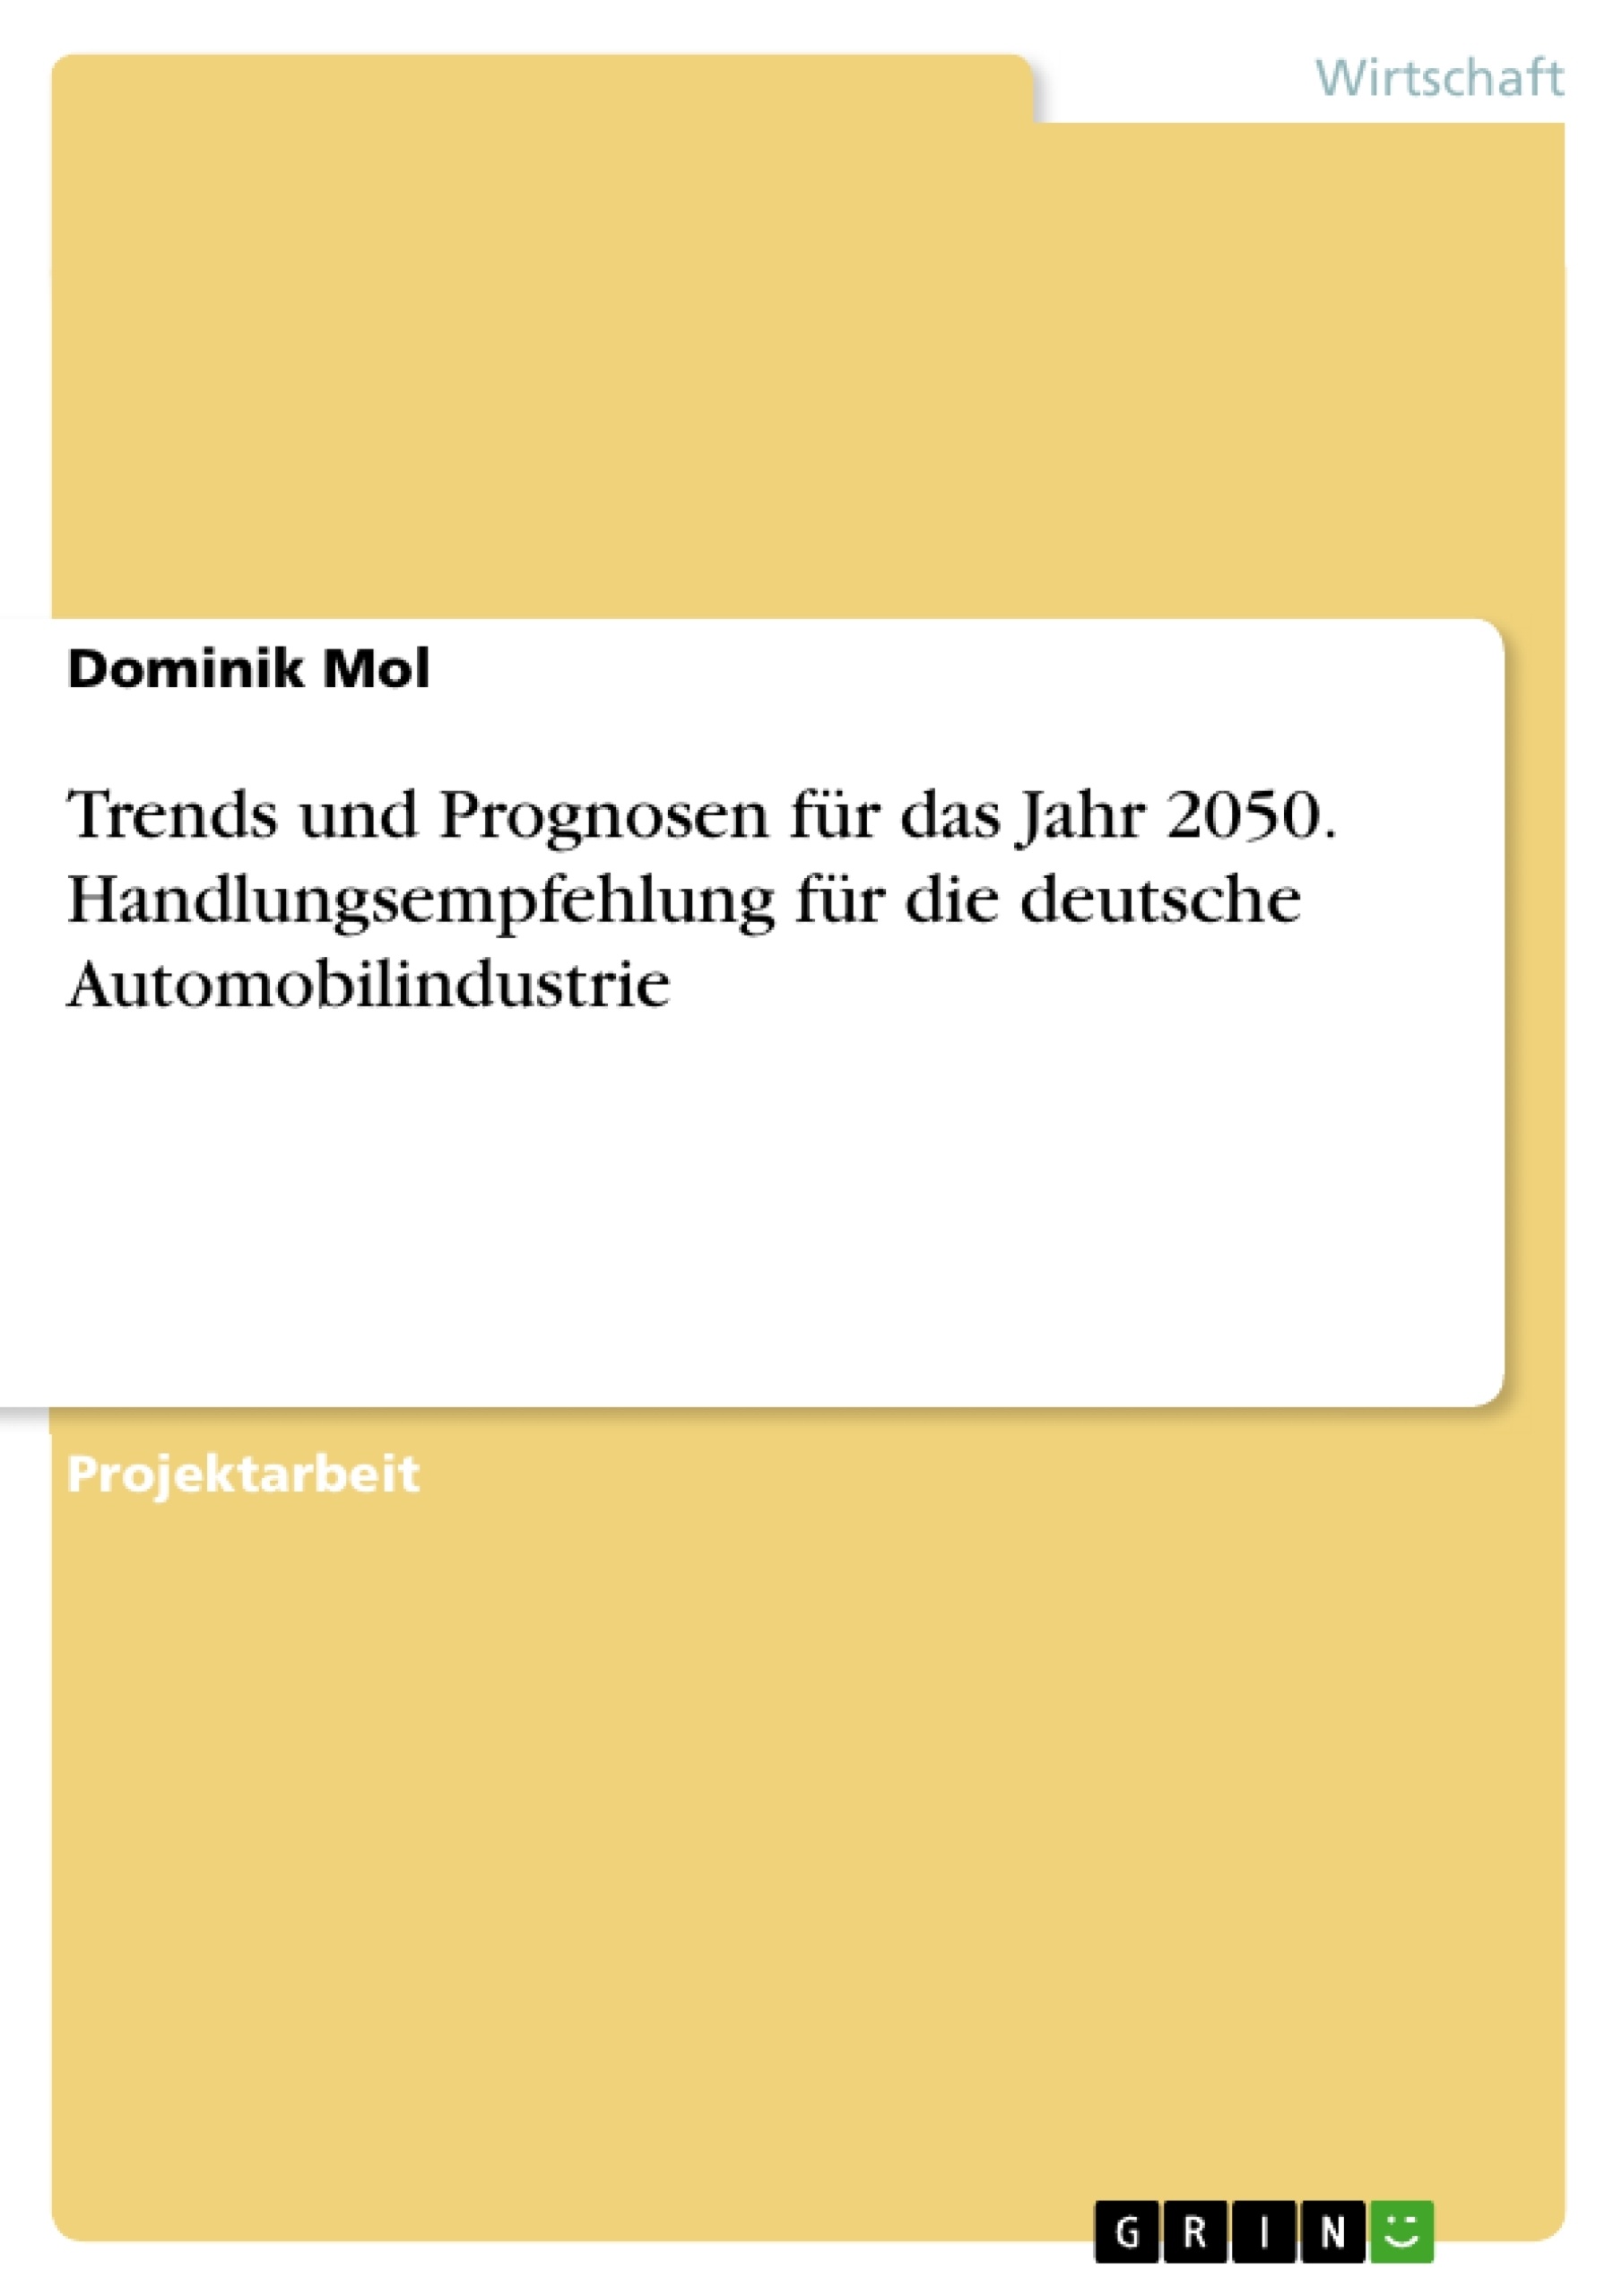 Titre: Trends und Prognosen für das Jahr 2050. Handlungsempfehlung für die deutsche Automobilindustrie